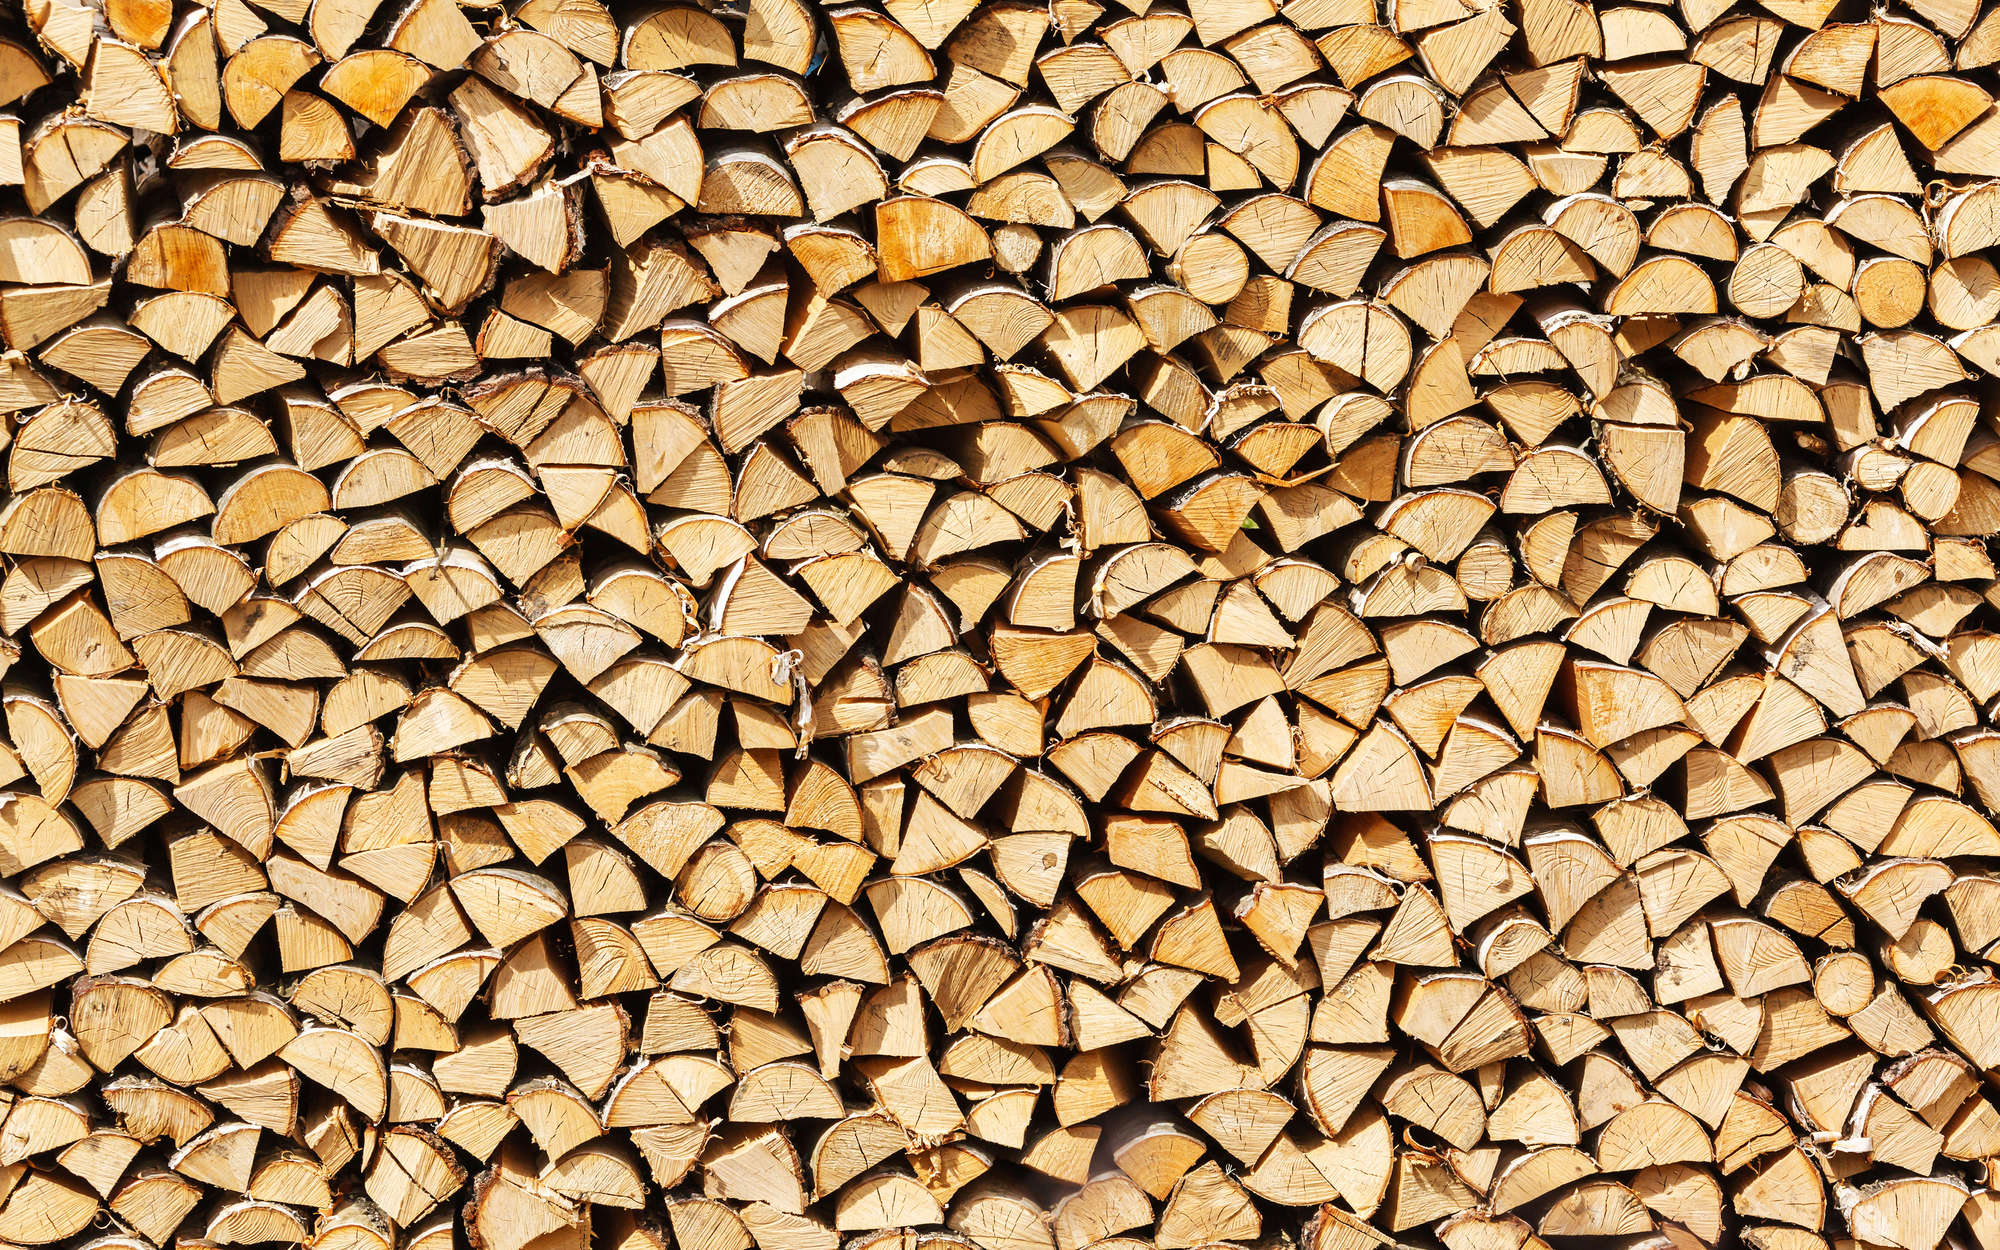             Digital behang gestapeld brandhout, brandhout - Premium glad vlies
        